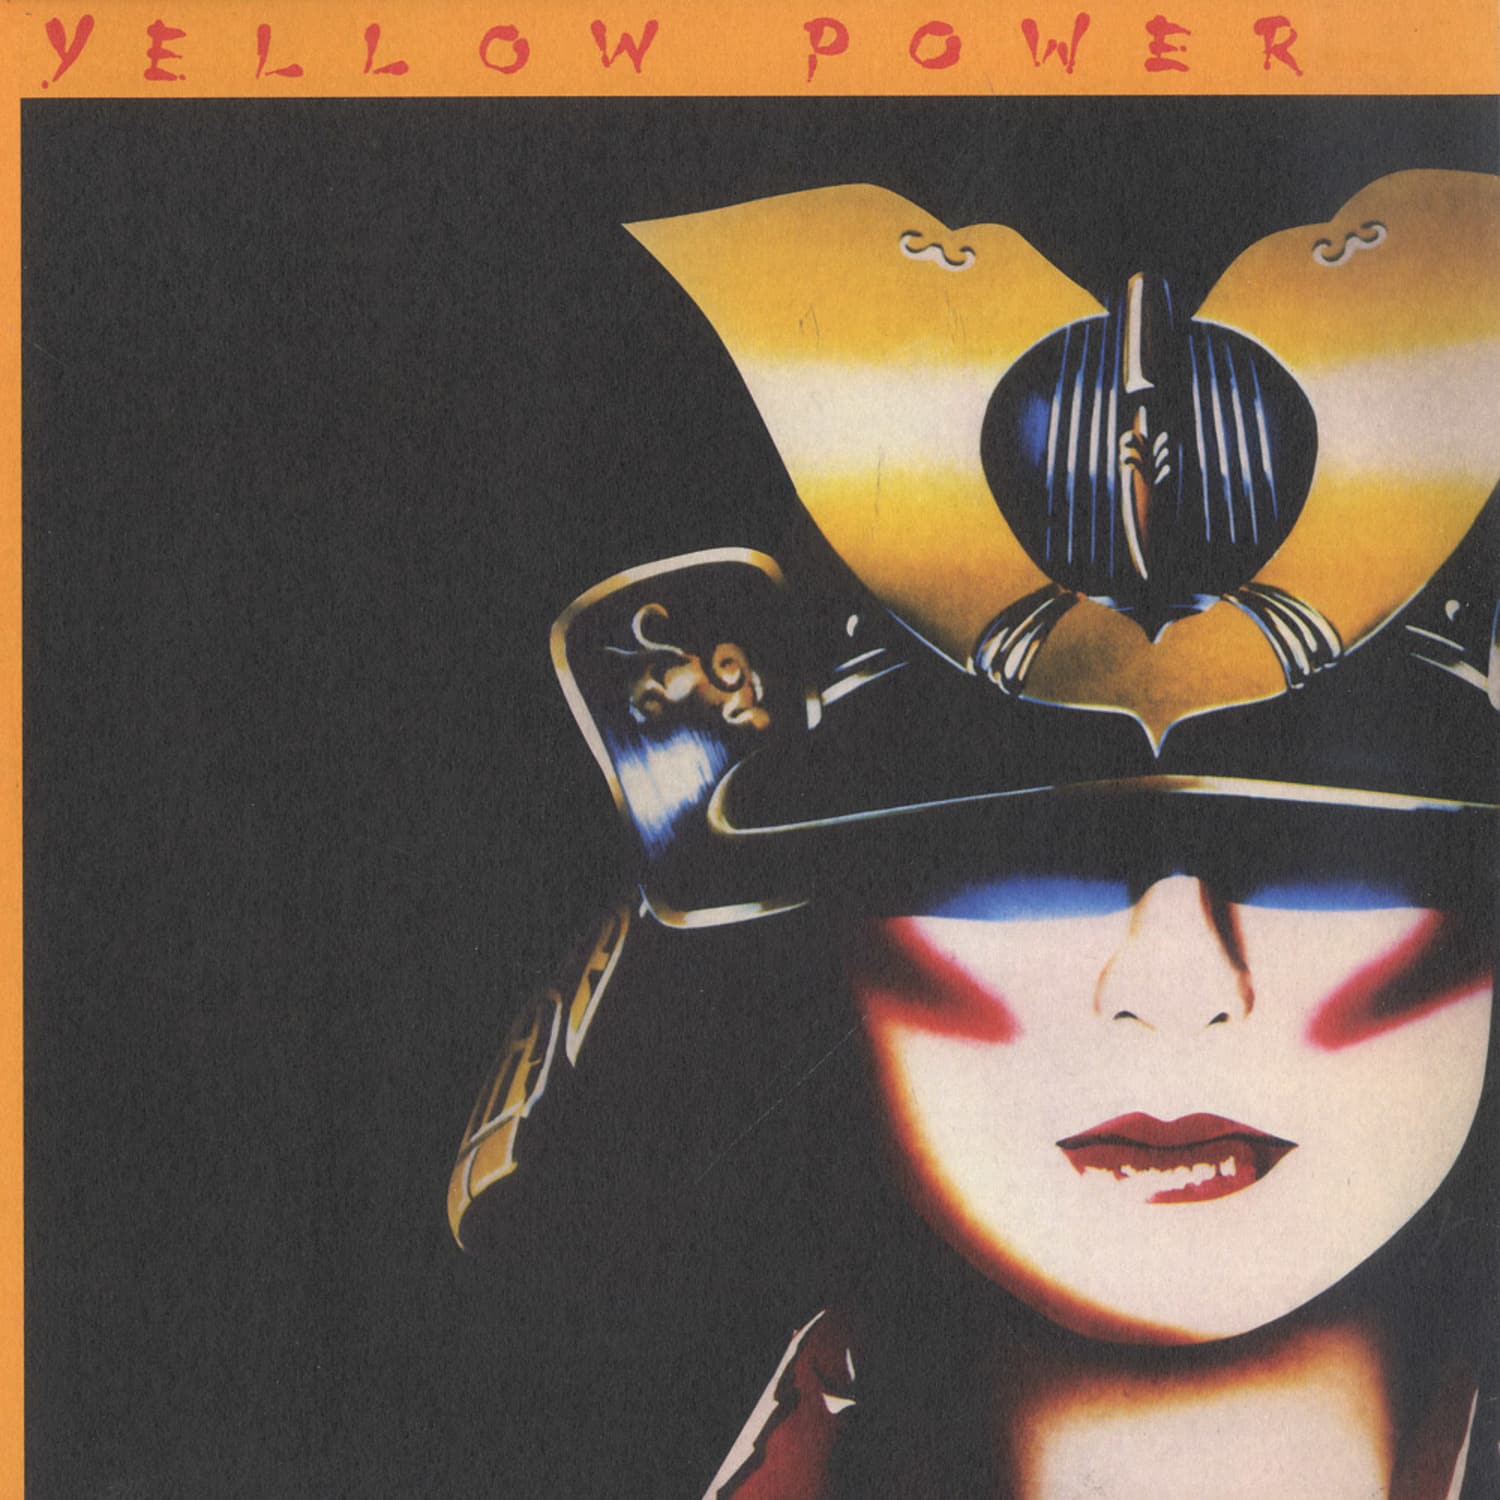 Yellow Power  - Yellow Power 